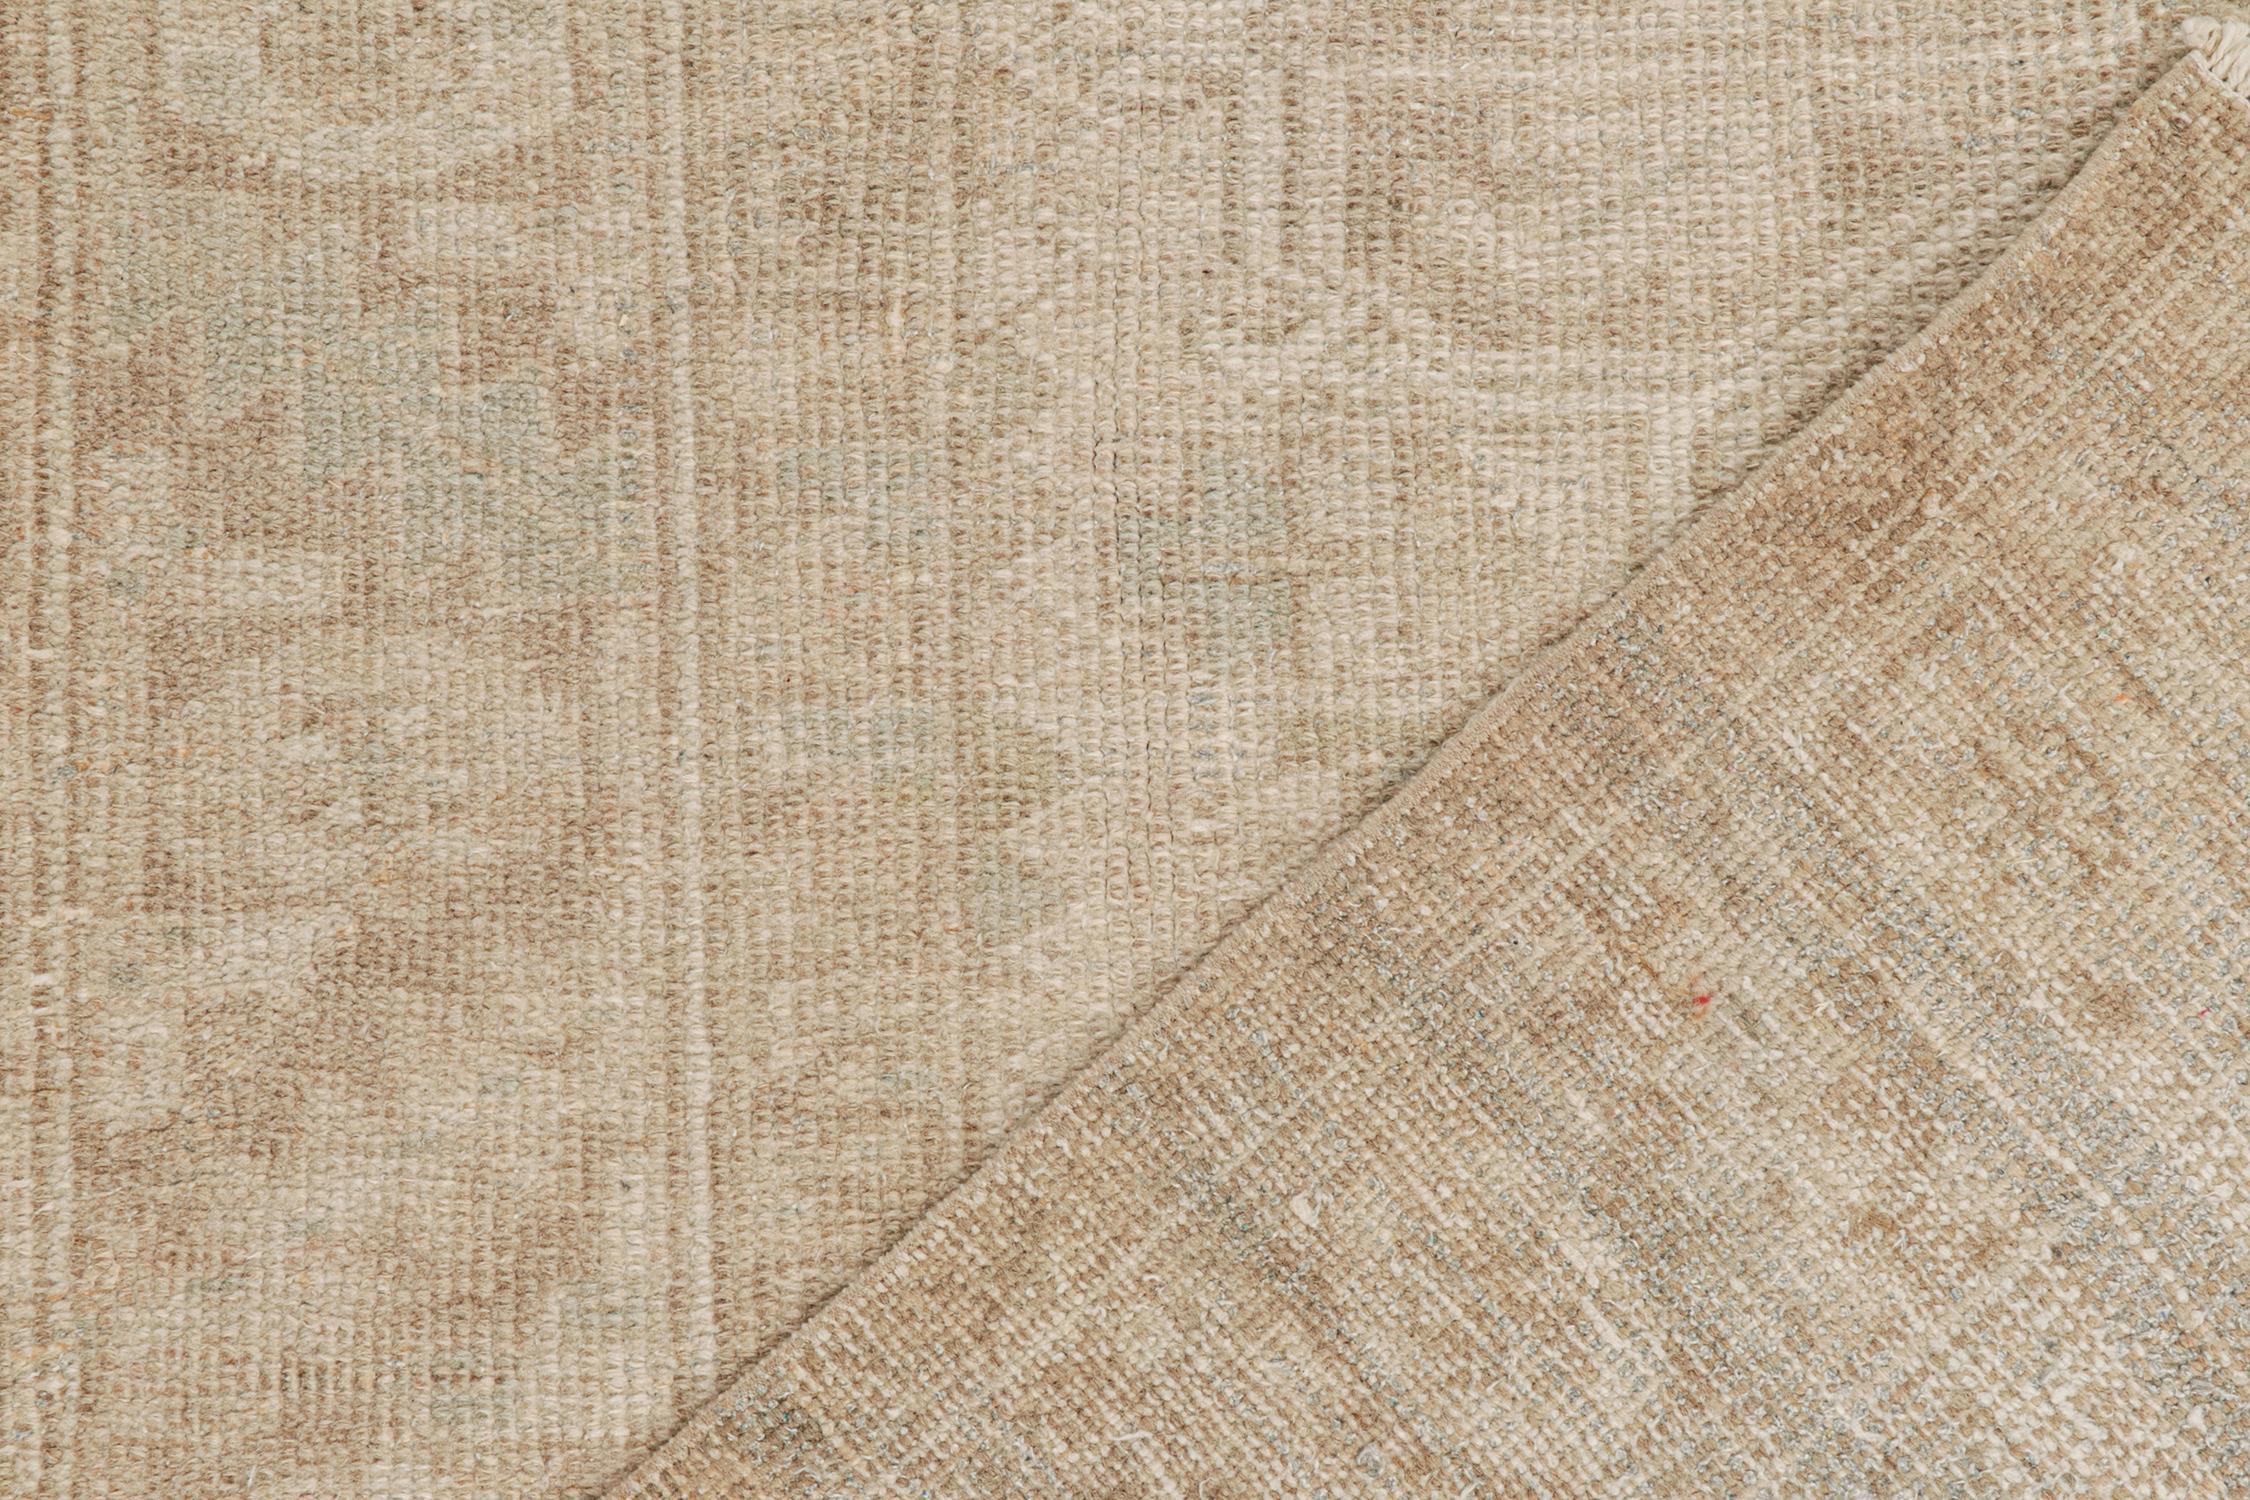 Wool Vintage Northwest Persian Rug in Greige Geometric Pattern by Rug & Kilim